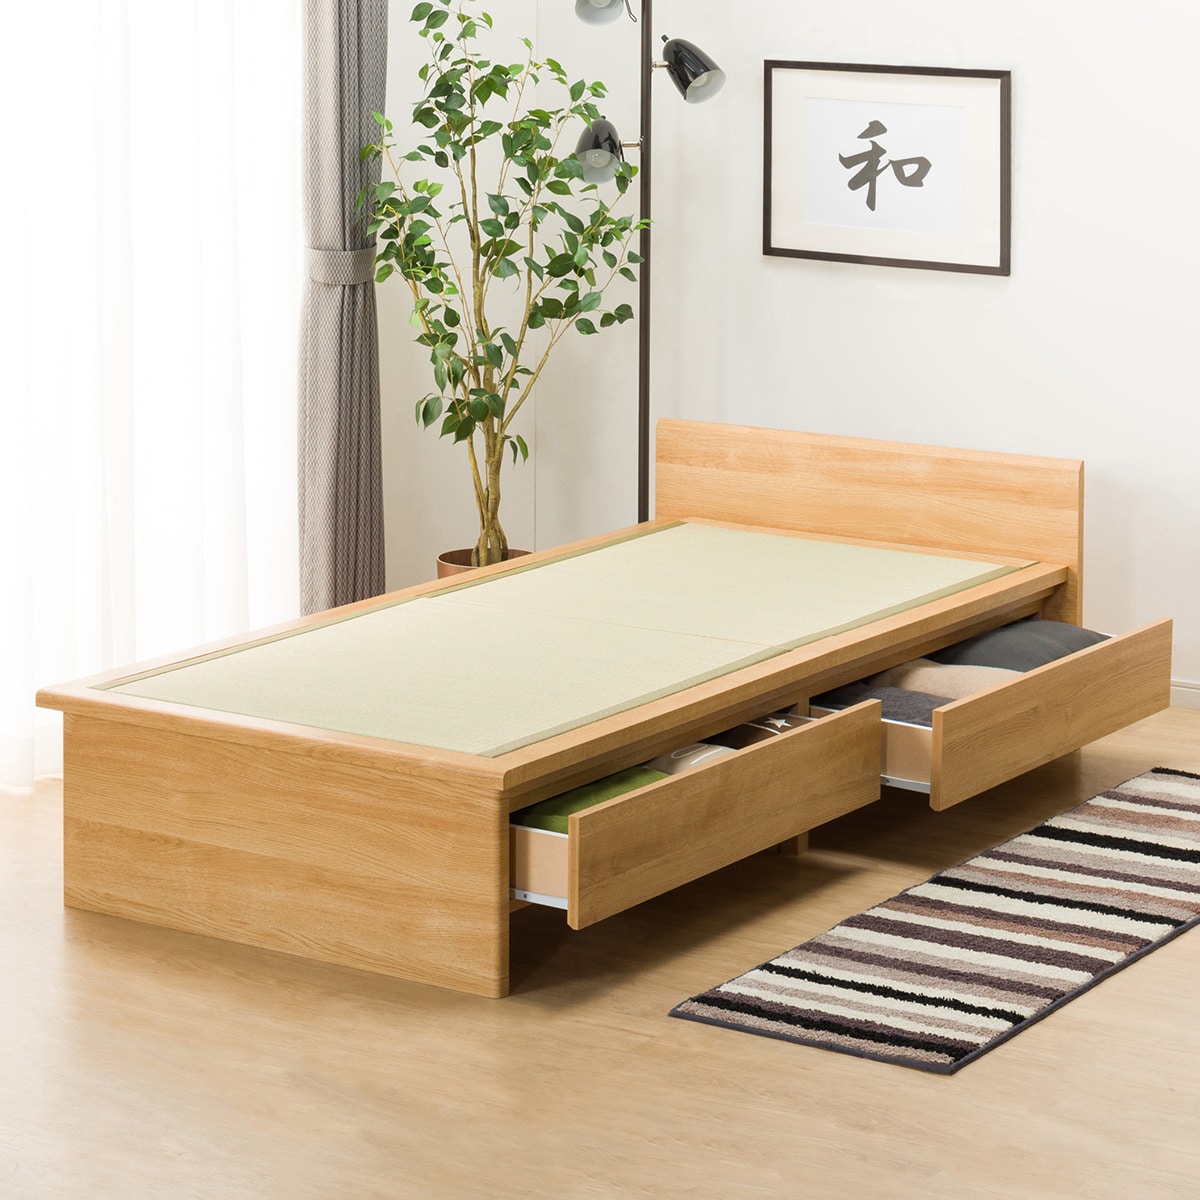 シングル畳ベッド(シデンDH F38 LBR)通販 | ニトリネット【公式】 家具 